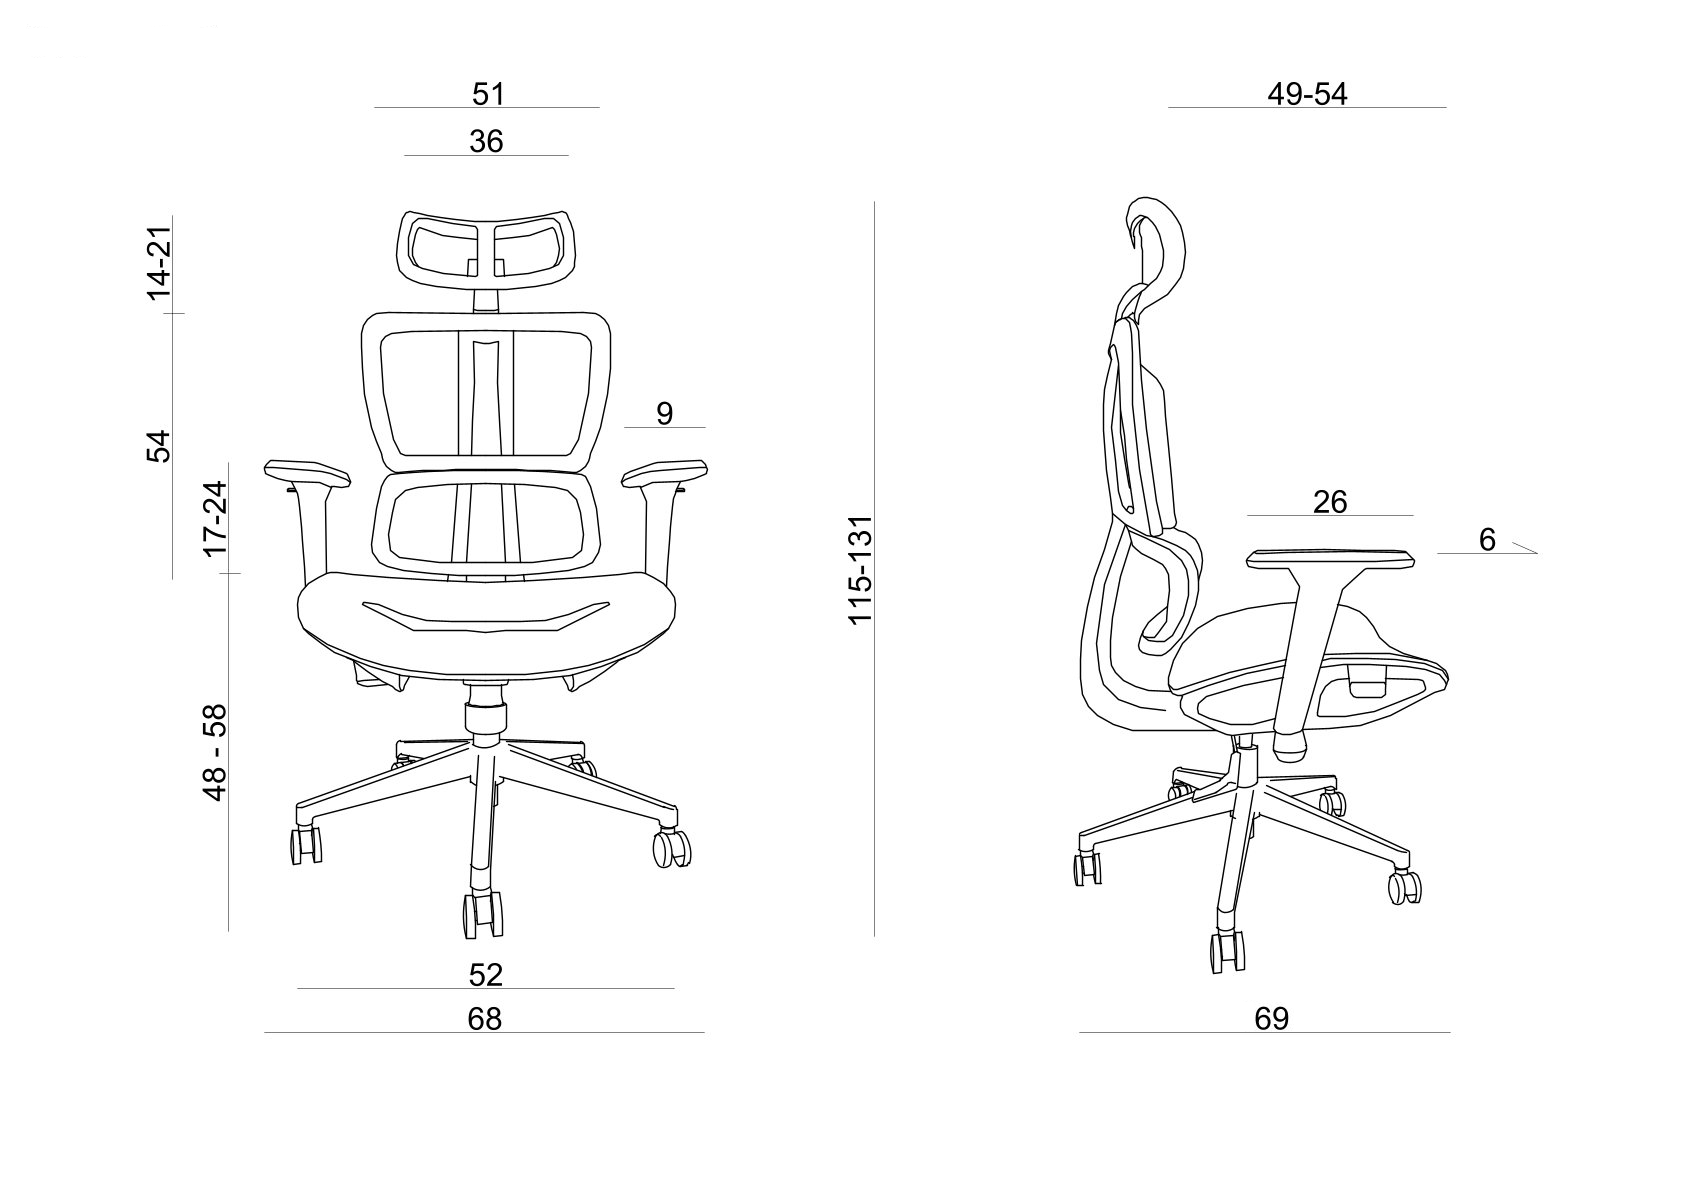 Scaune ergonomice de birou reglabile - Confort și suport pentru munca de birou